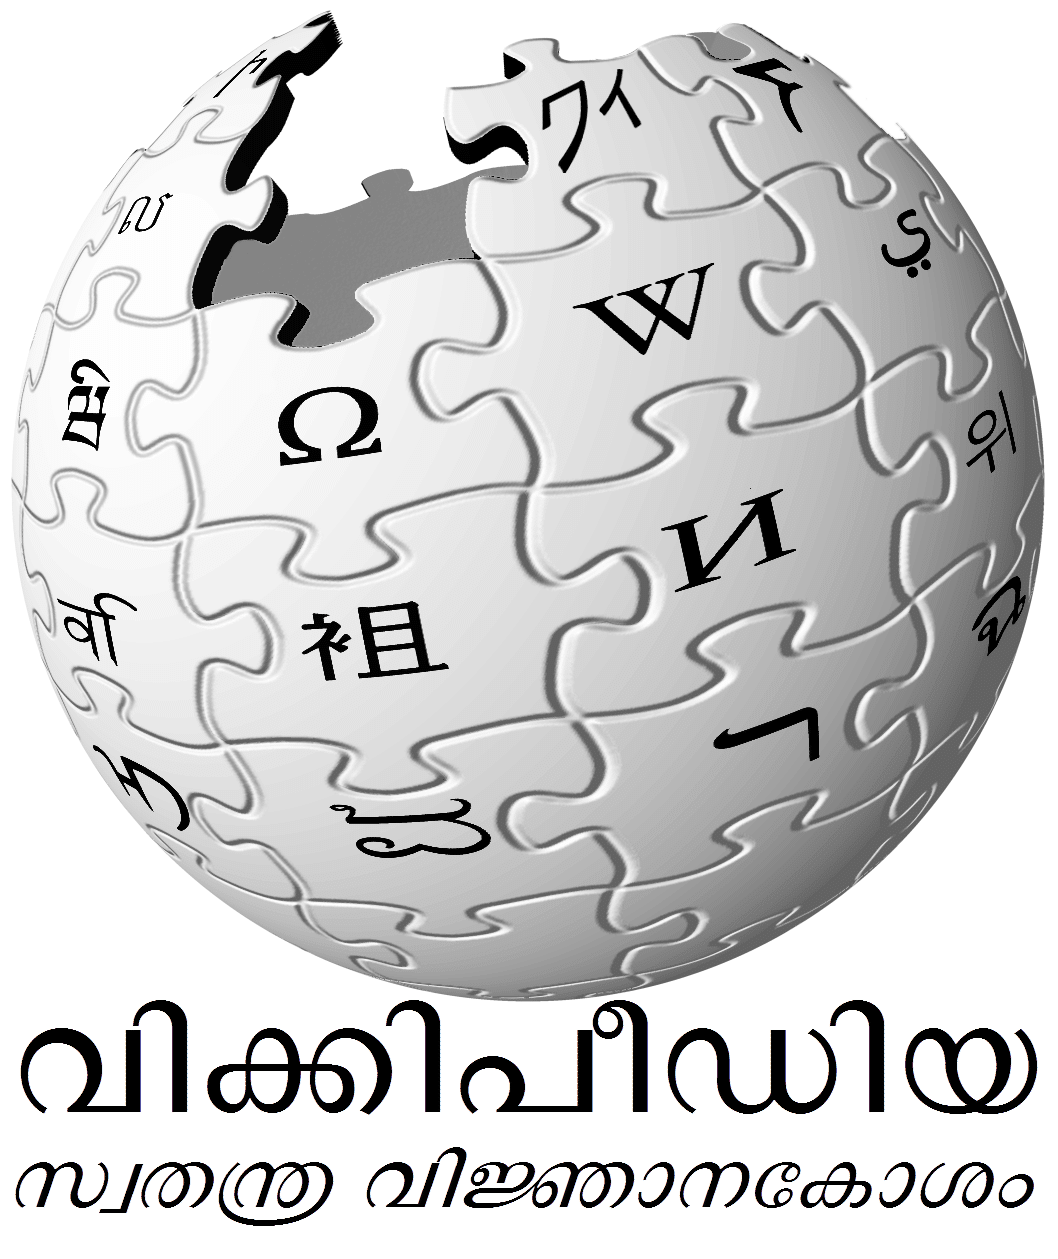 E-reader - Wikipedia